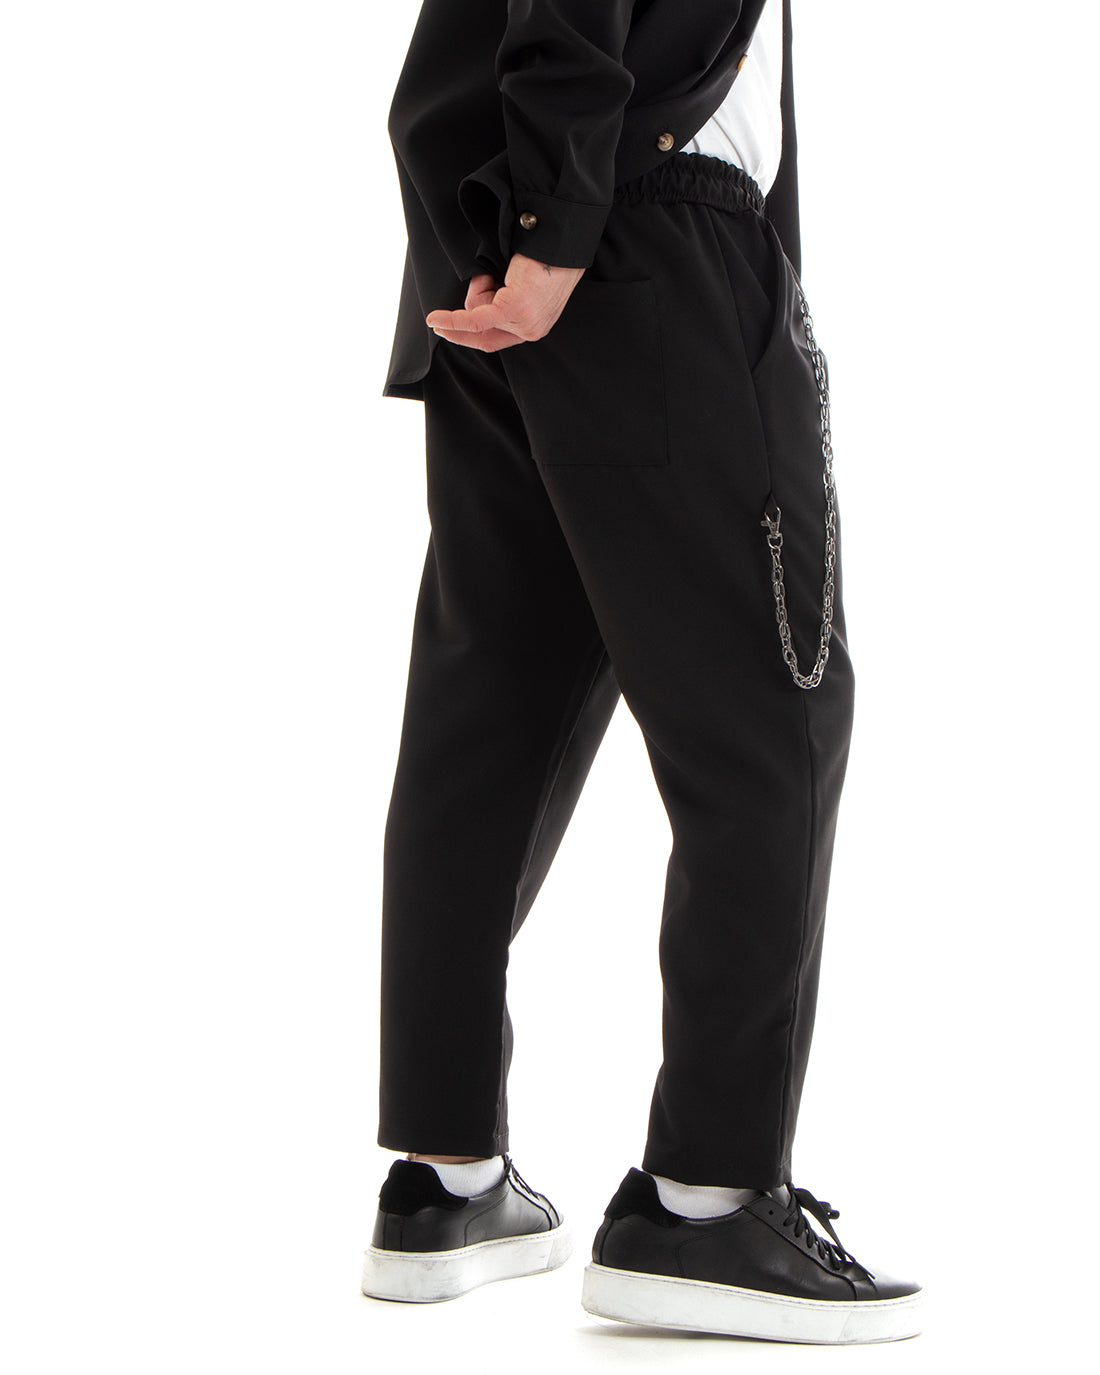 Completo Set Coordinato Uomo Viscosa Camicia Con Colletto Pantaloni Outfit Nero GIOSAL-OU2250A